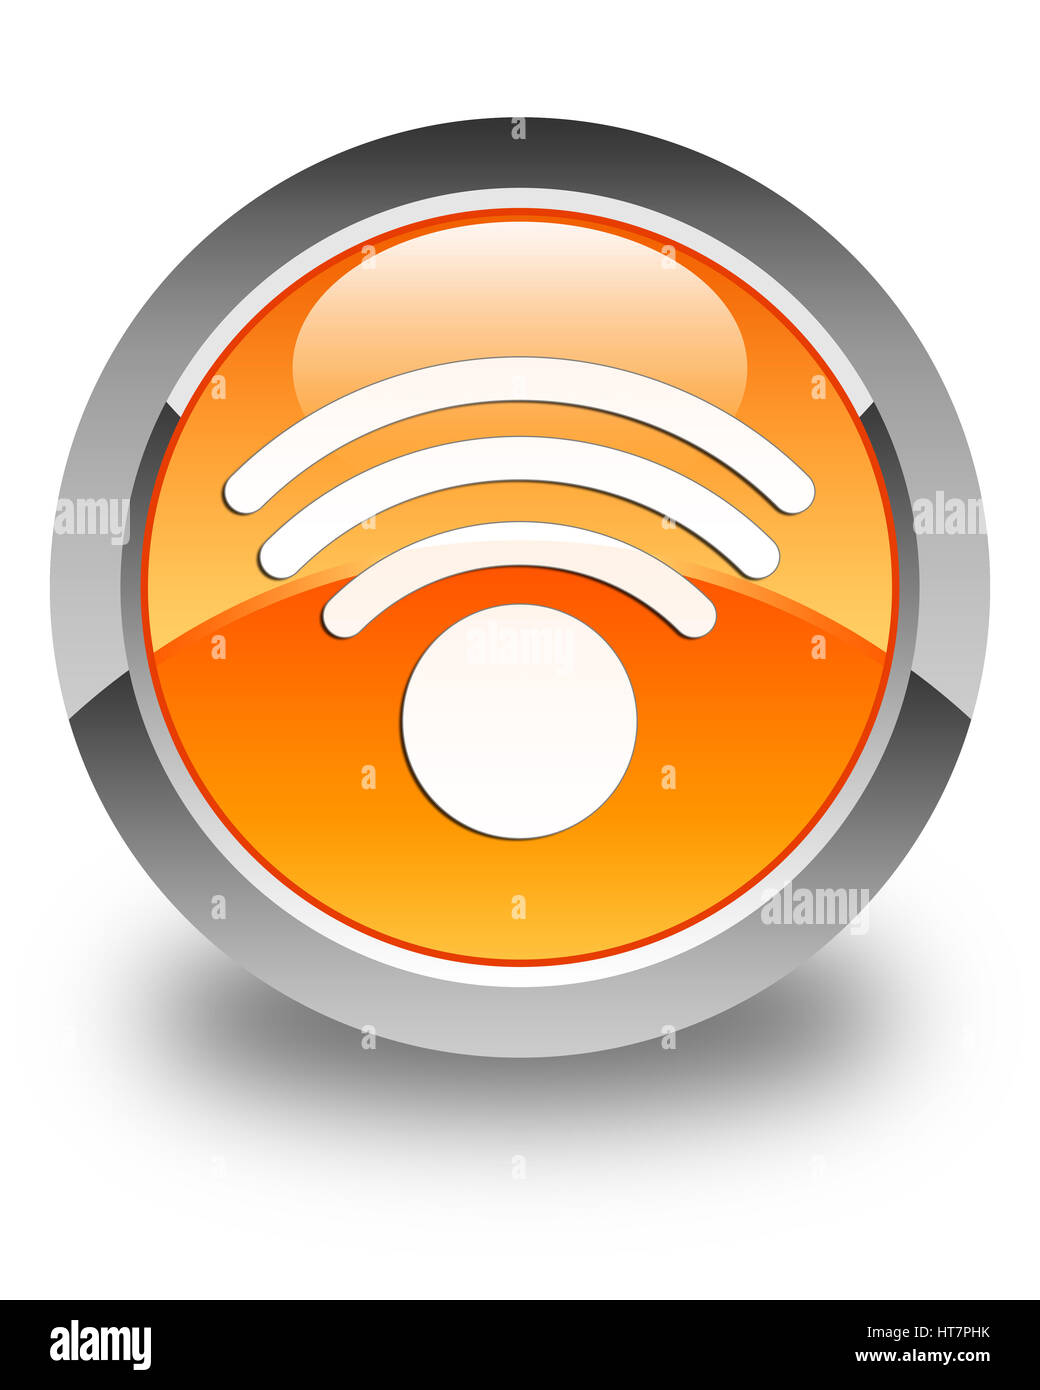 Connexion Wi-Fi au réseau local isolé sur l'icône bouton rond orange brillant abstract illustration Banque D'Images